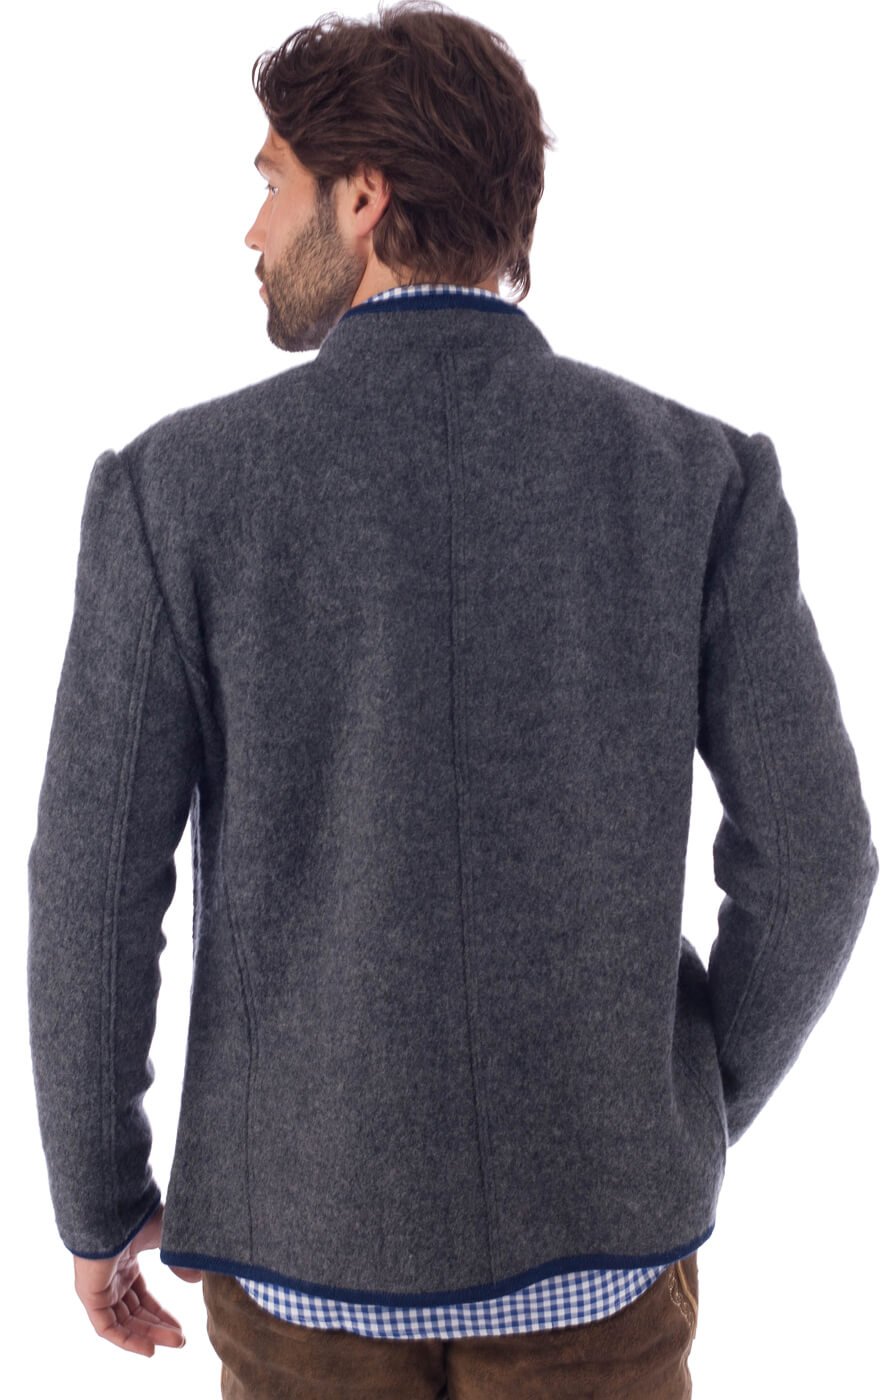 weitere Bilder von traditional jacket outdoor Birgel WJ grey denim